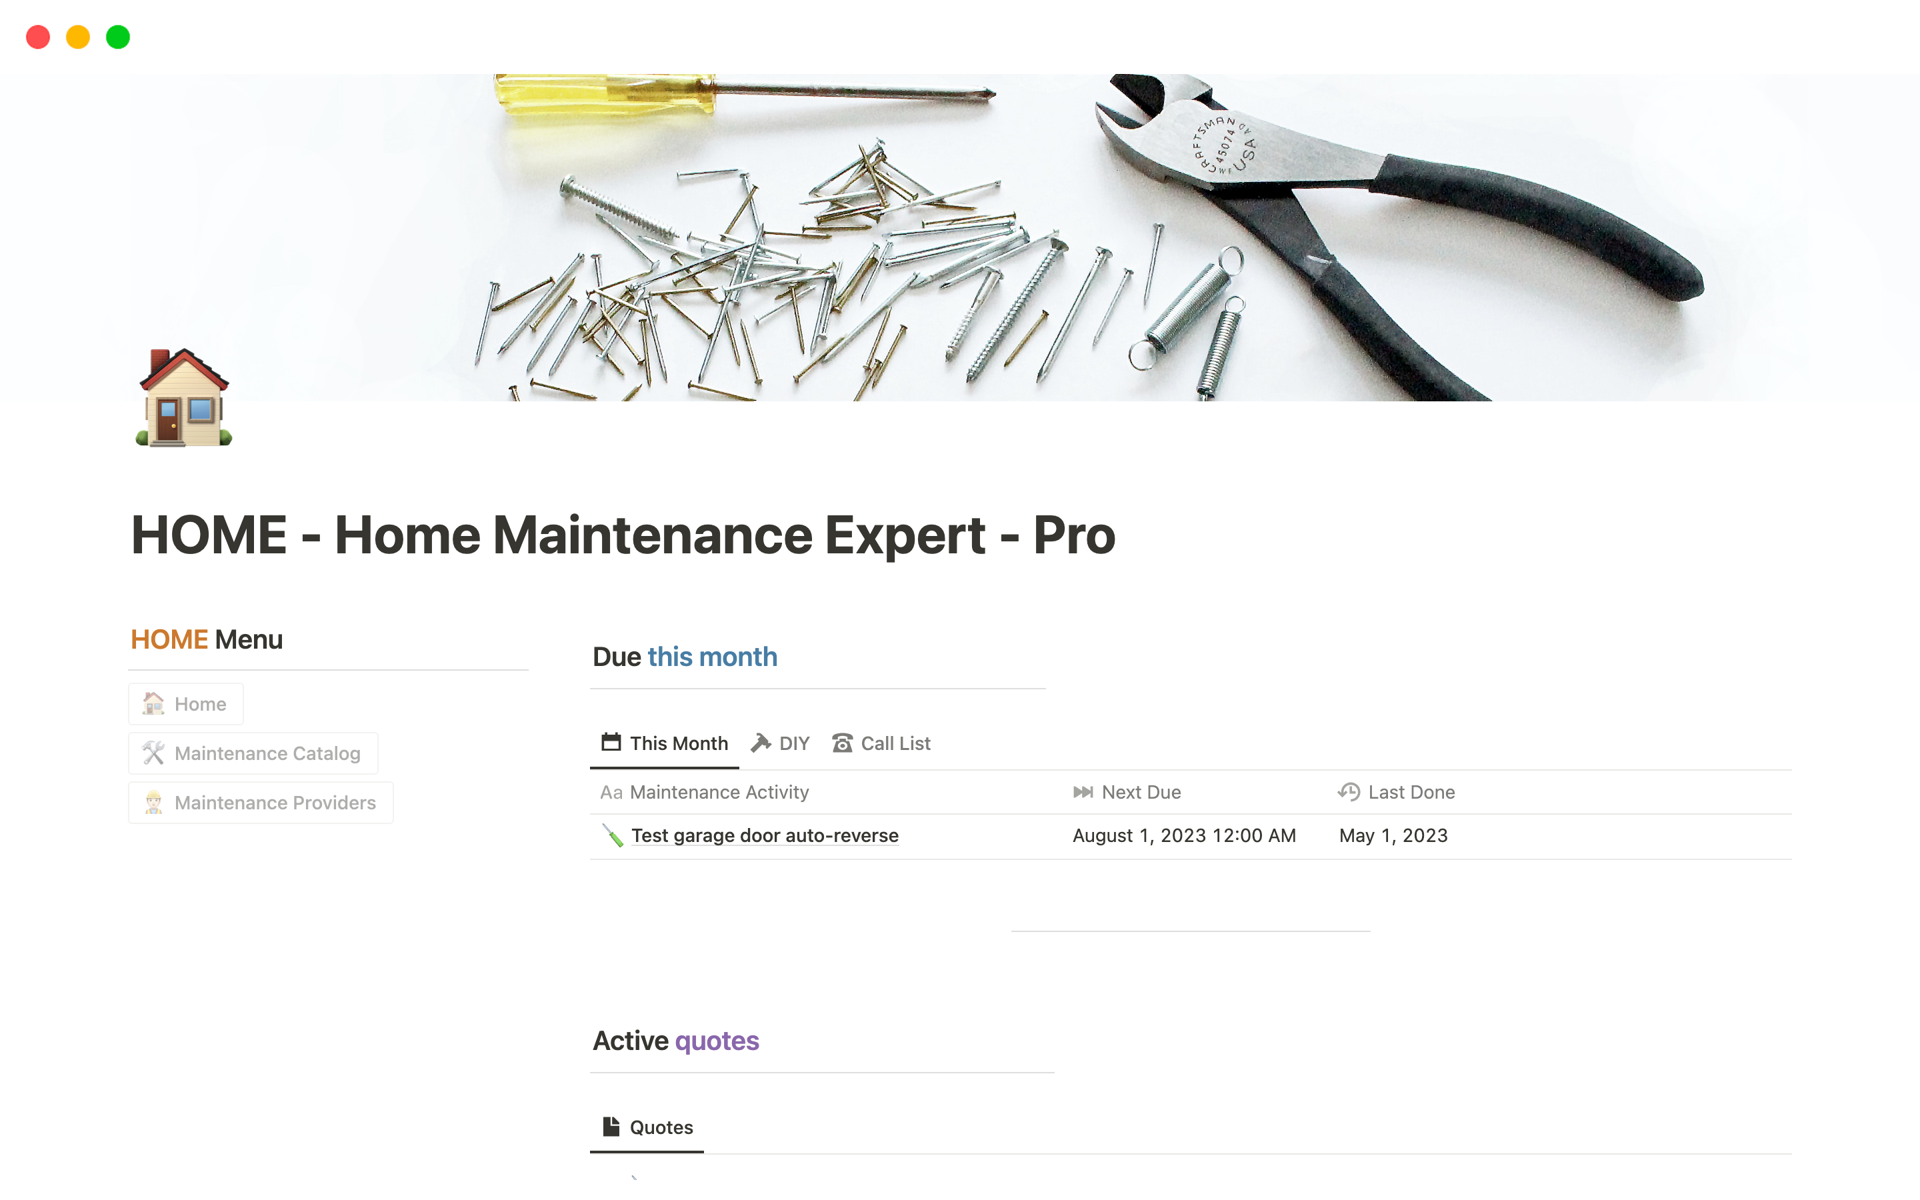 En förhandsgranskning av mallen för HOME - Home Maintenance Expert - Pro